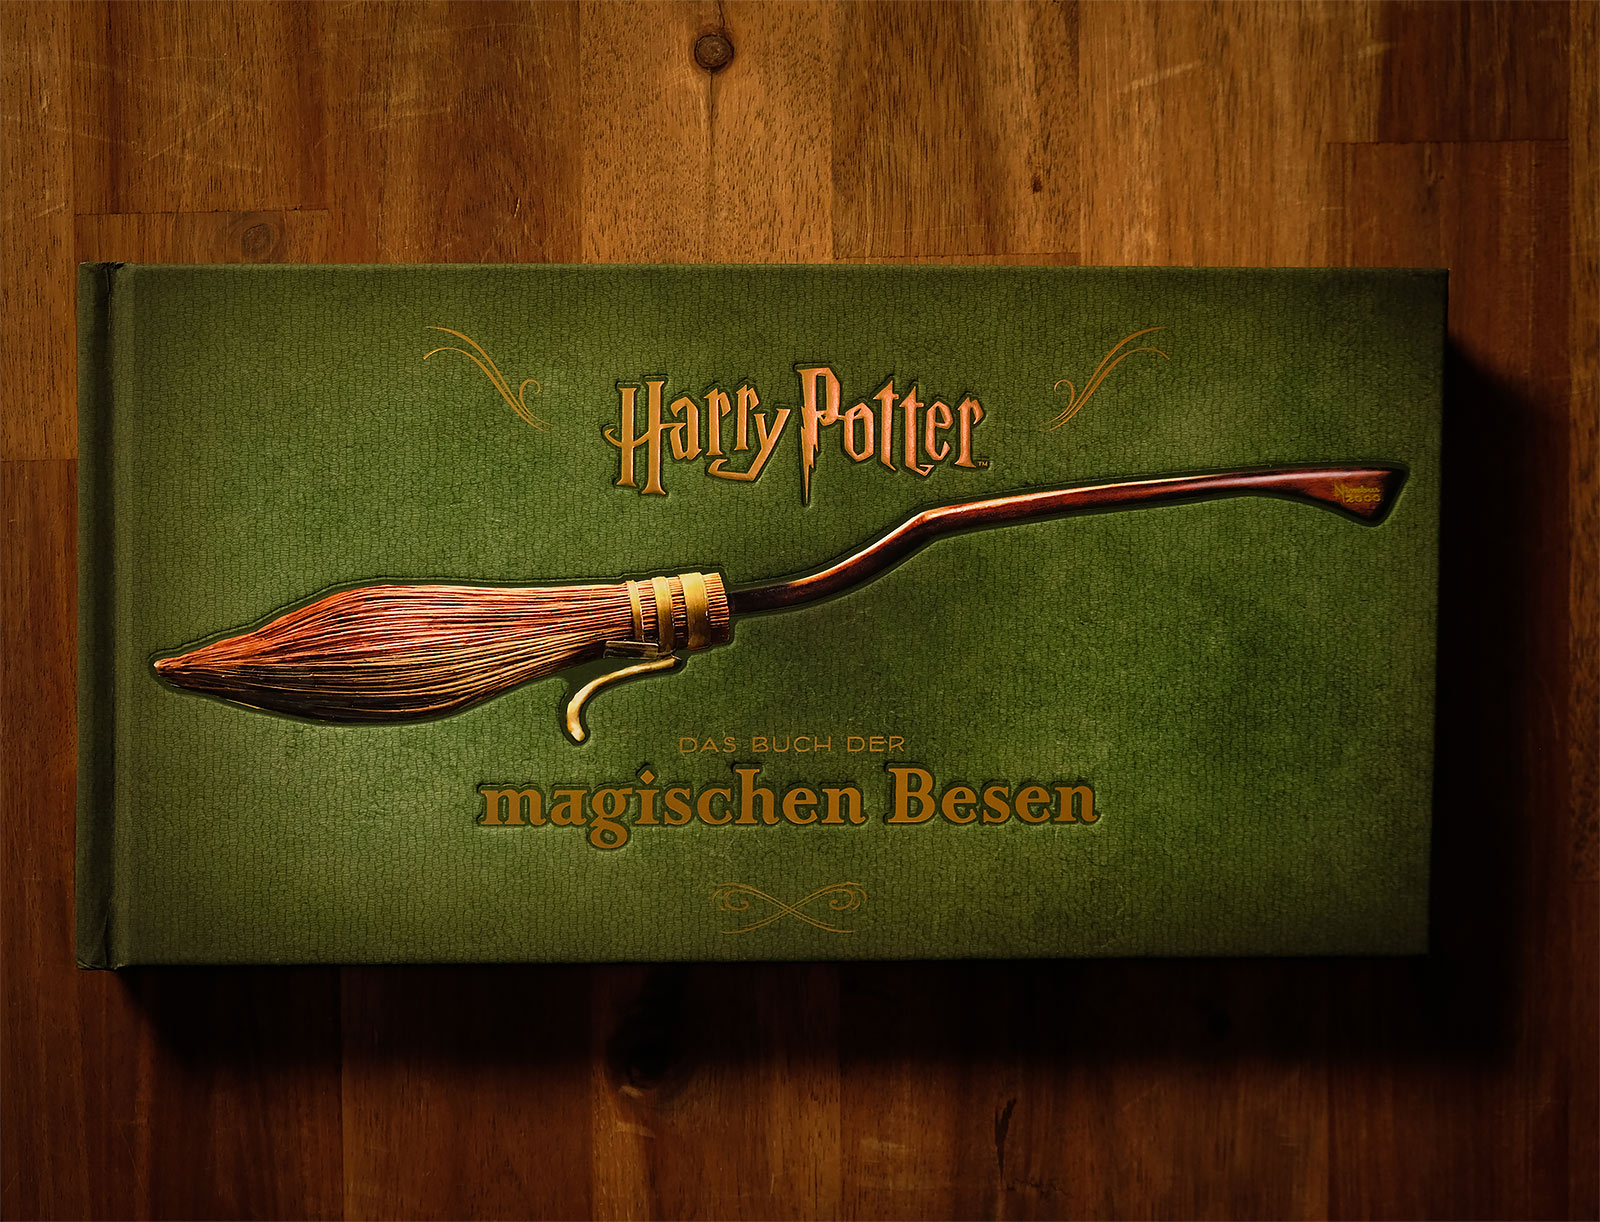 Harry Potter - Het Boek van de Magische Bezems